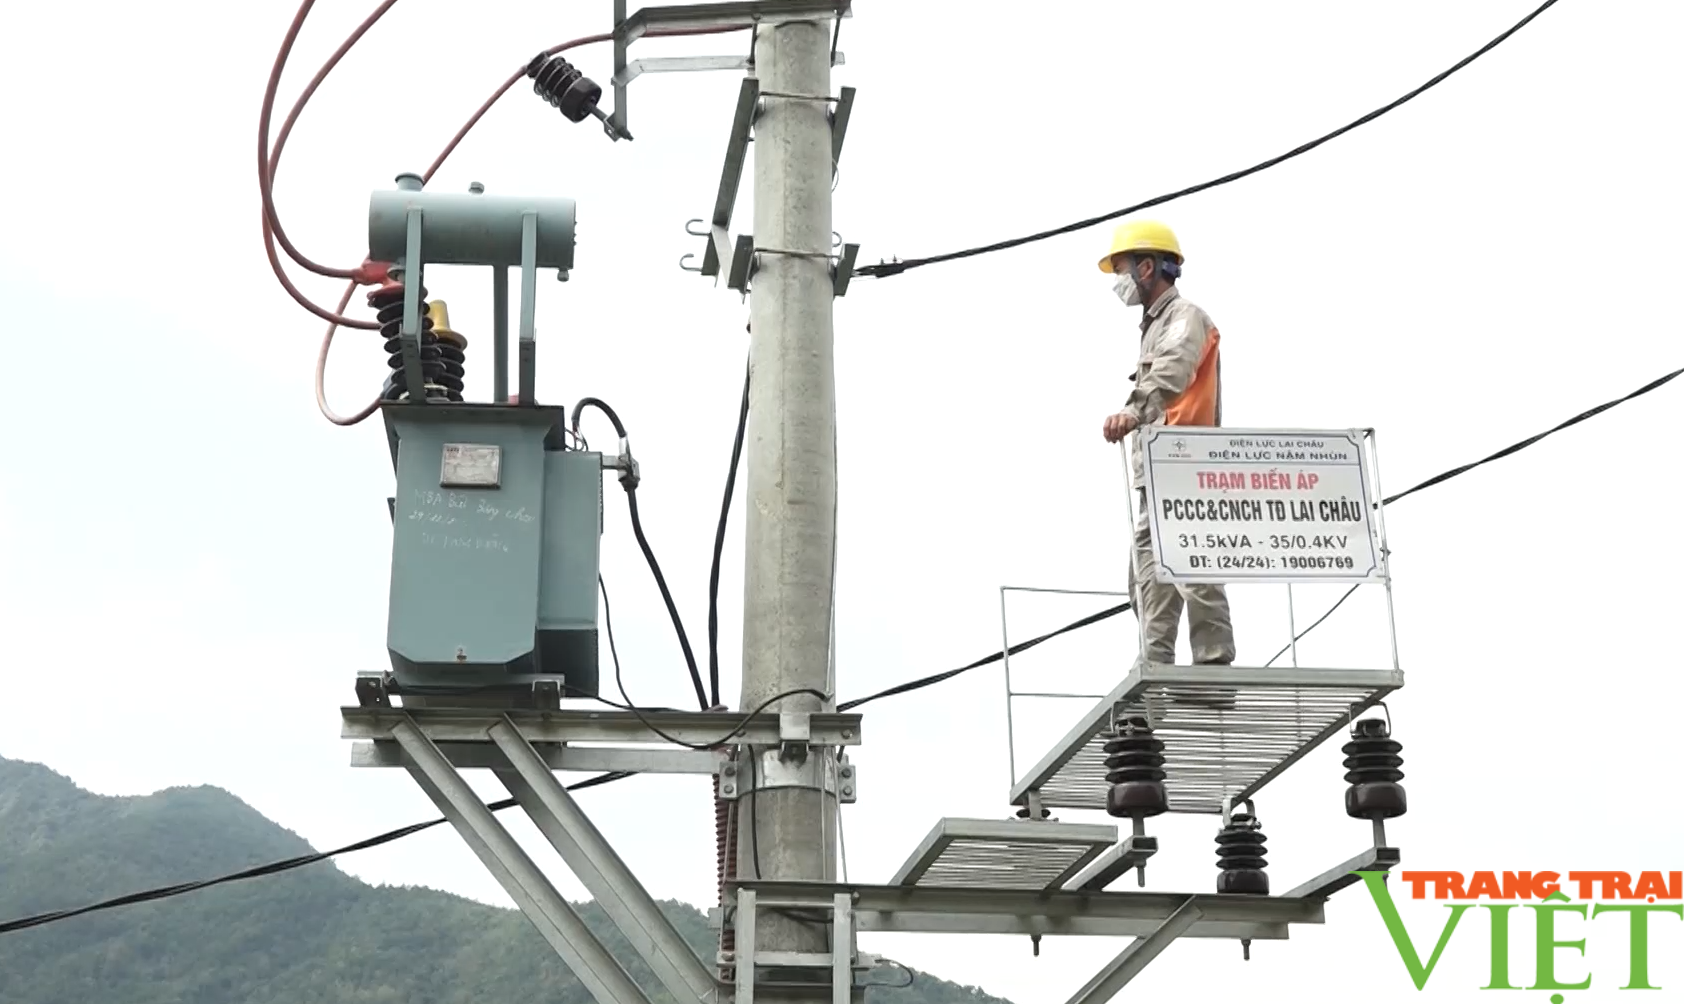 Công ty Điện lực Lai Châu: Xây dựng môi trường lao động an toàn, nâng cao uy tín doanh nghiệp - Ảnh 3.